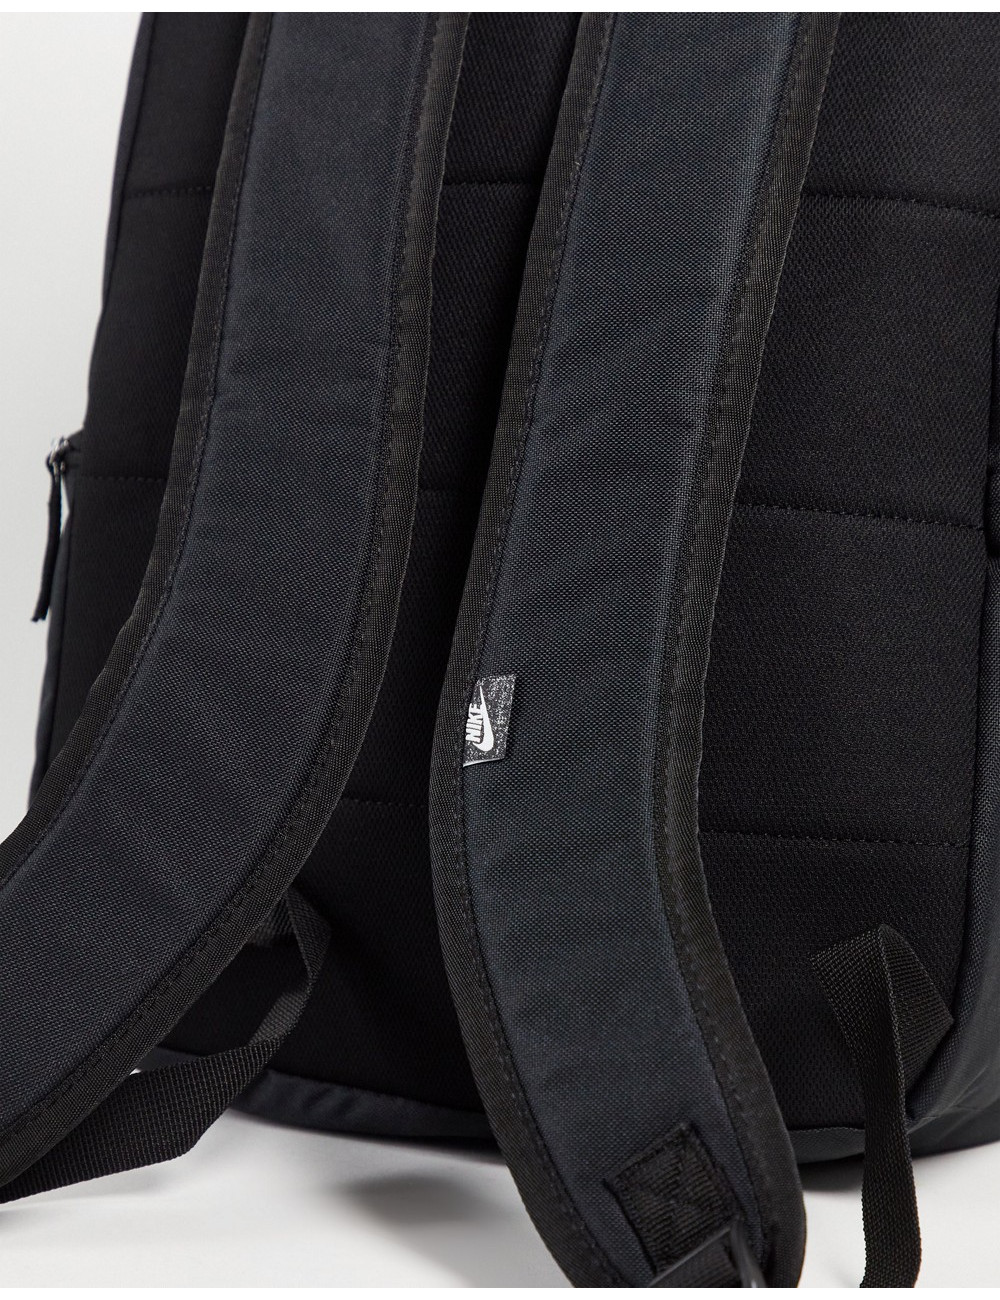 Nike Heritage backpack in...